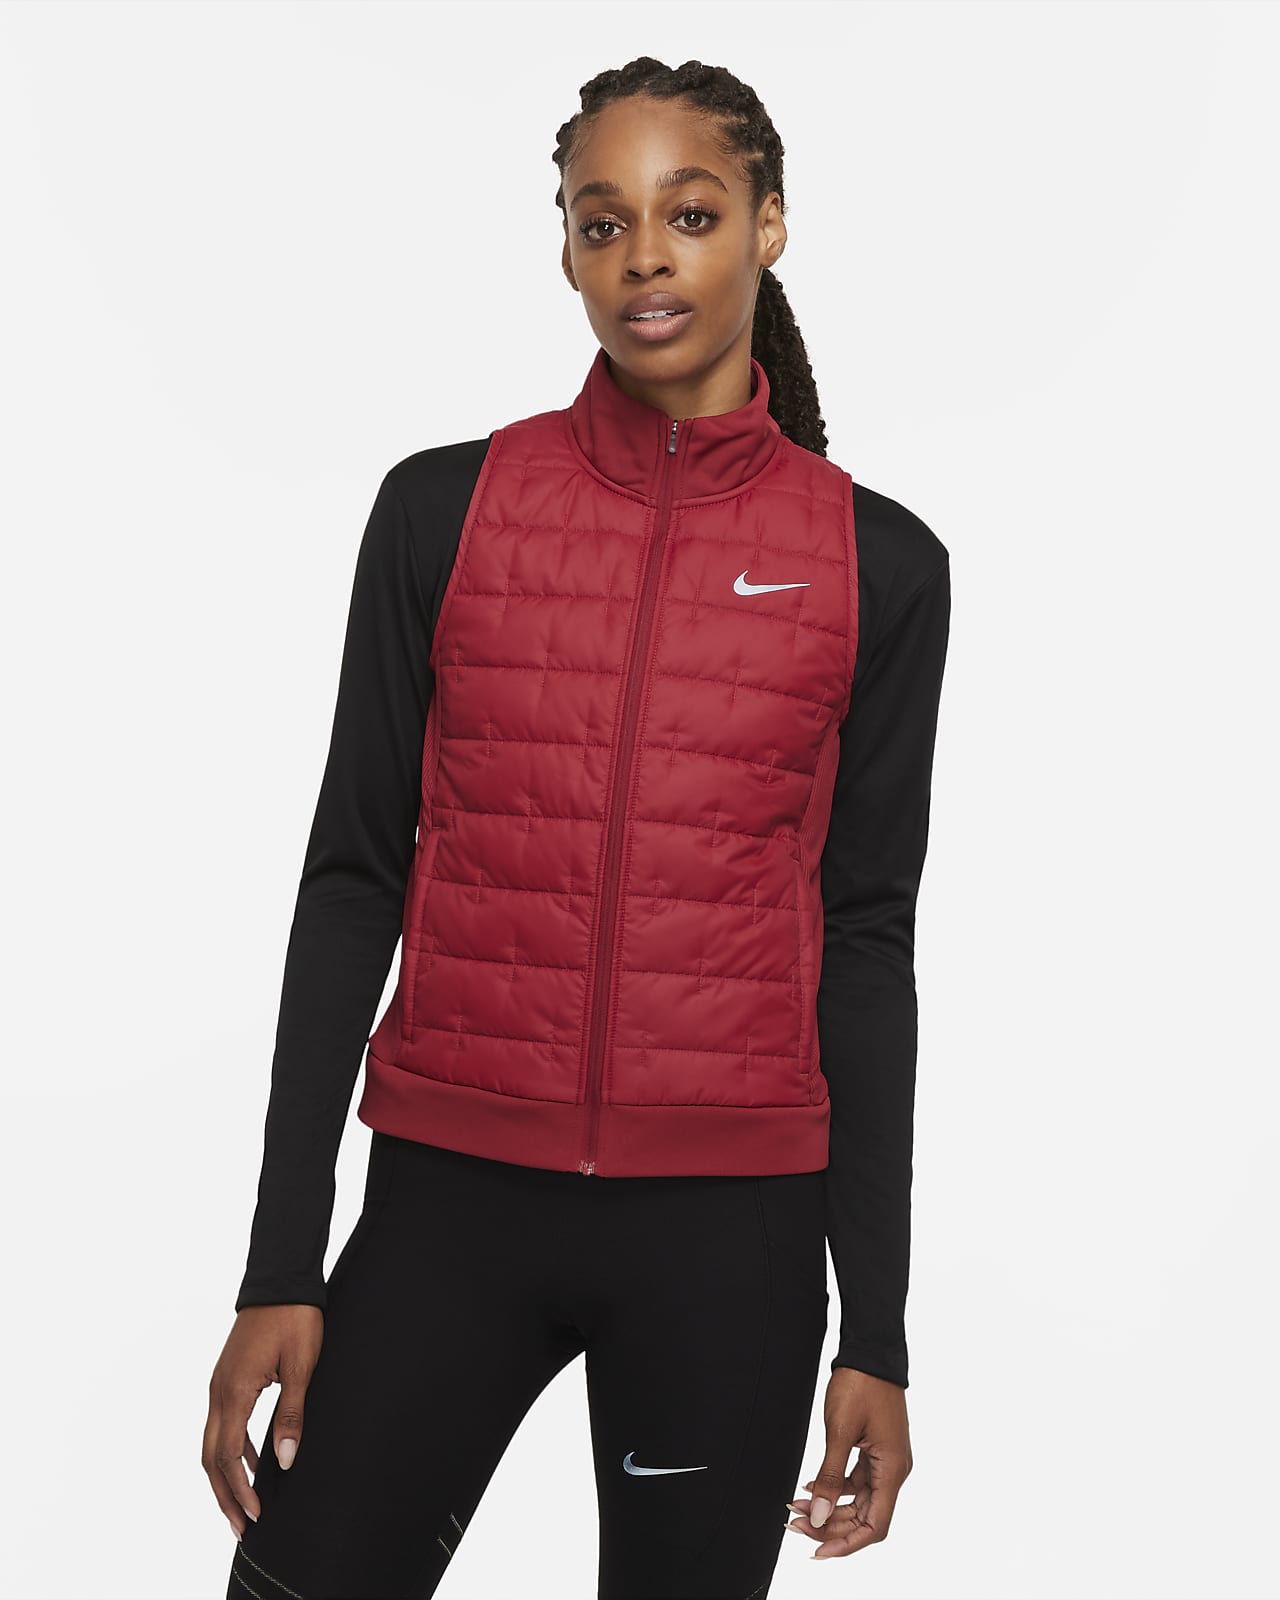 Dámská běžecká vesta Nike Therma-FIT se syntetickou výplní